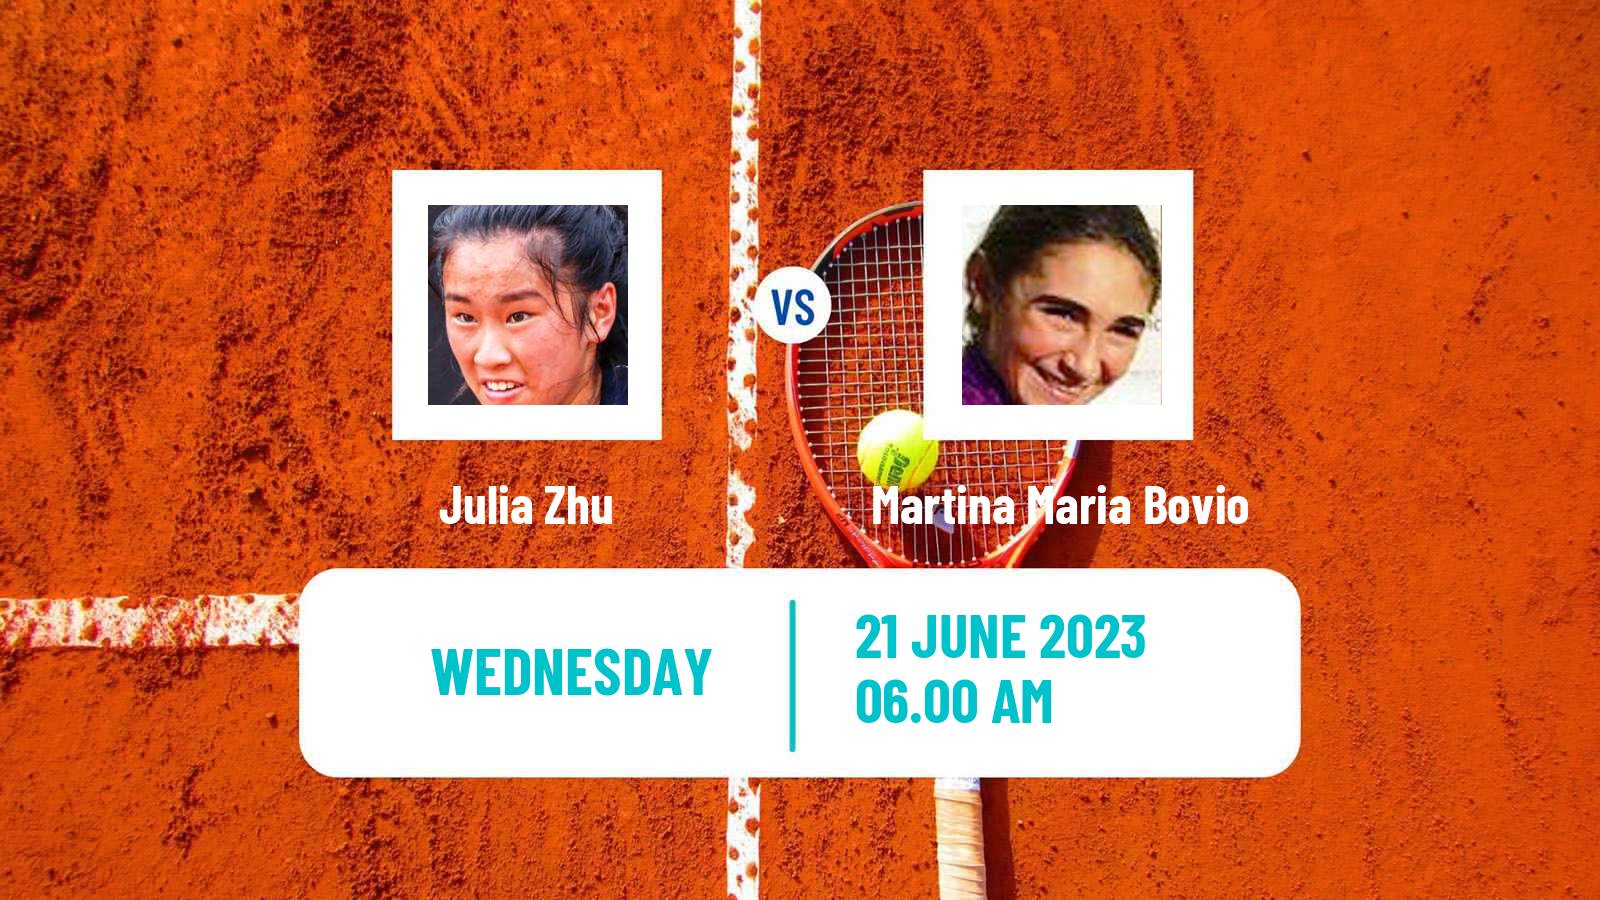 Tennis ITF W15 Monastir 20 Women Julia Zhu - Martina Maria Bovio